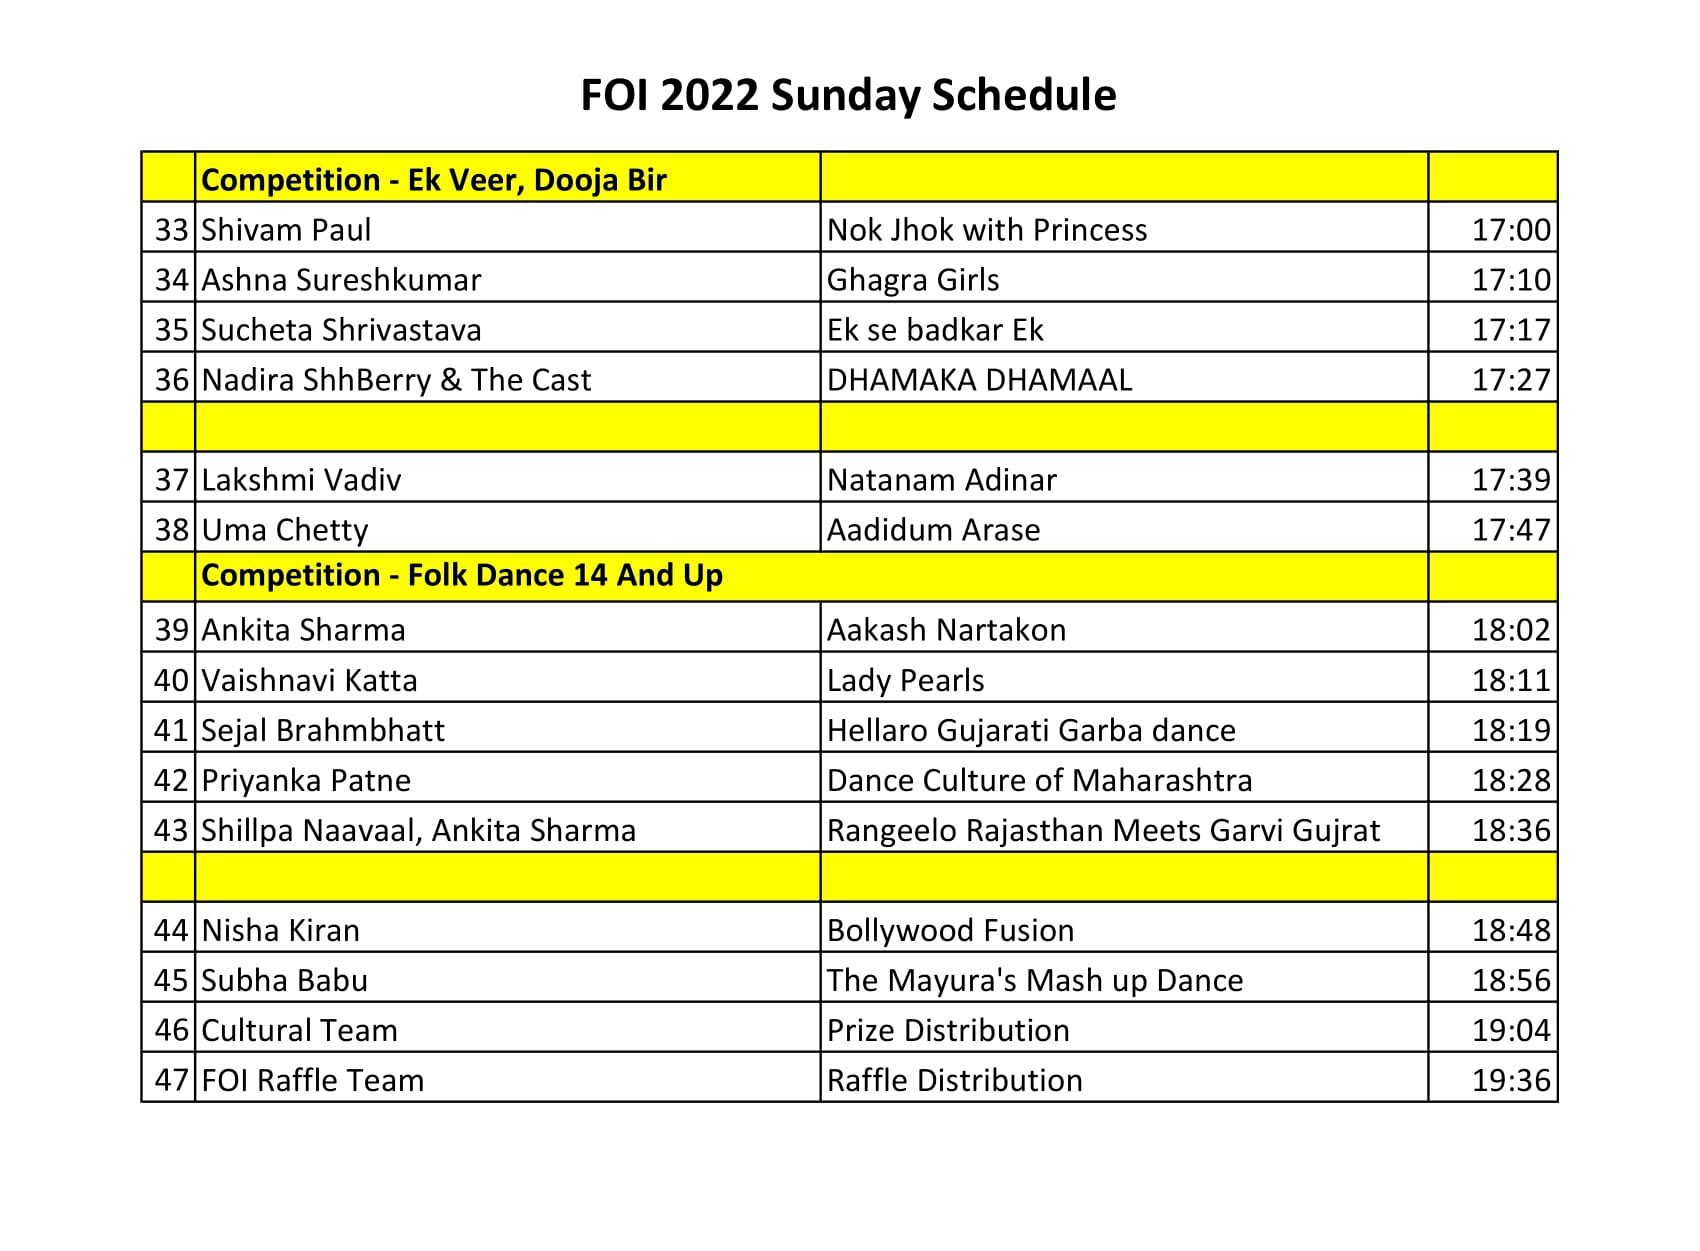 FOI 2022 Sunday Schedule-2